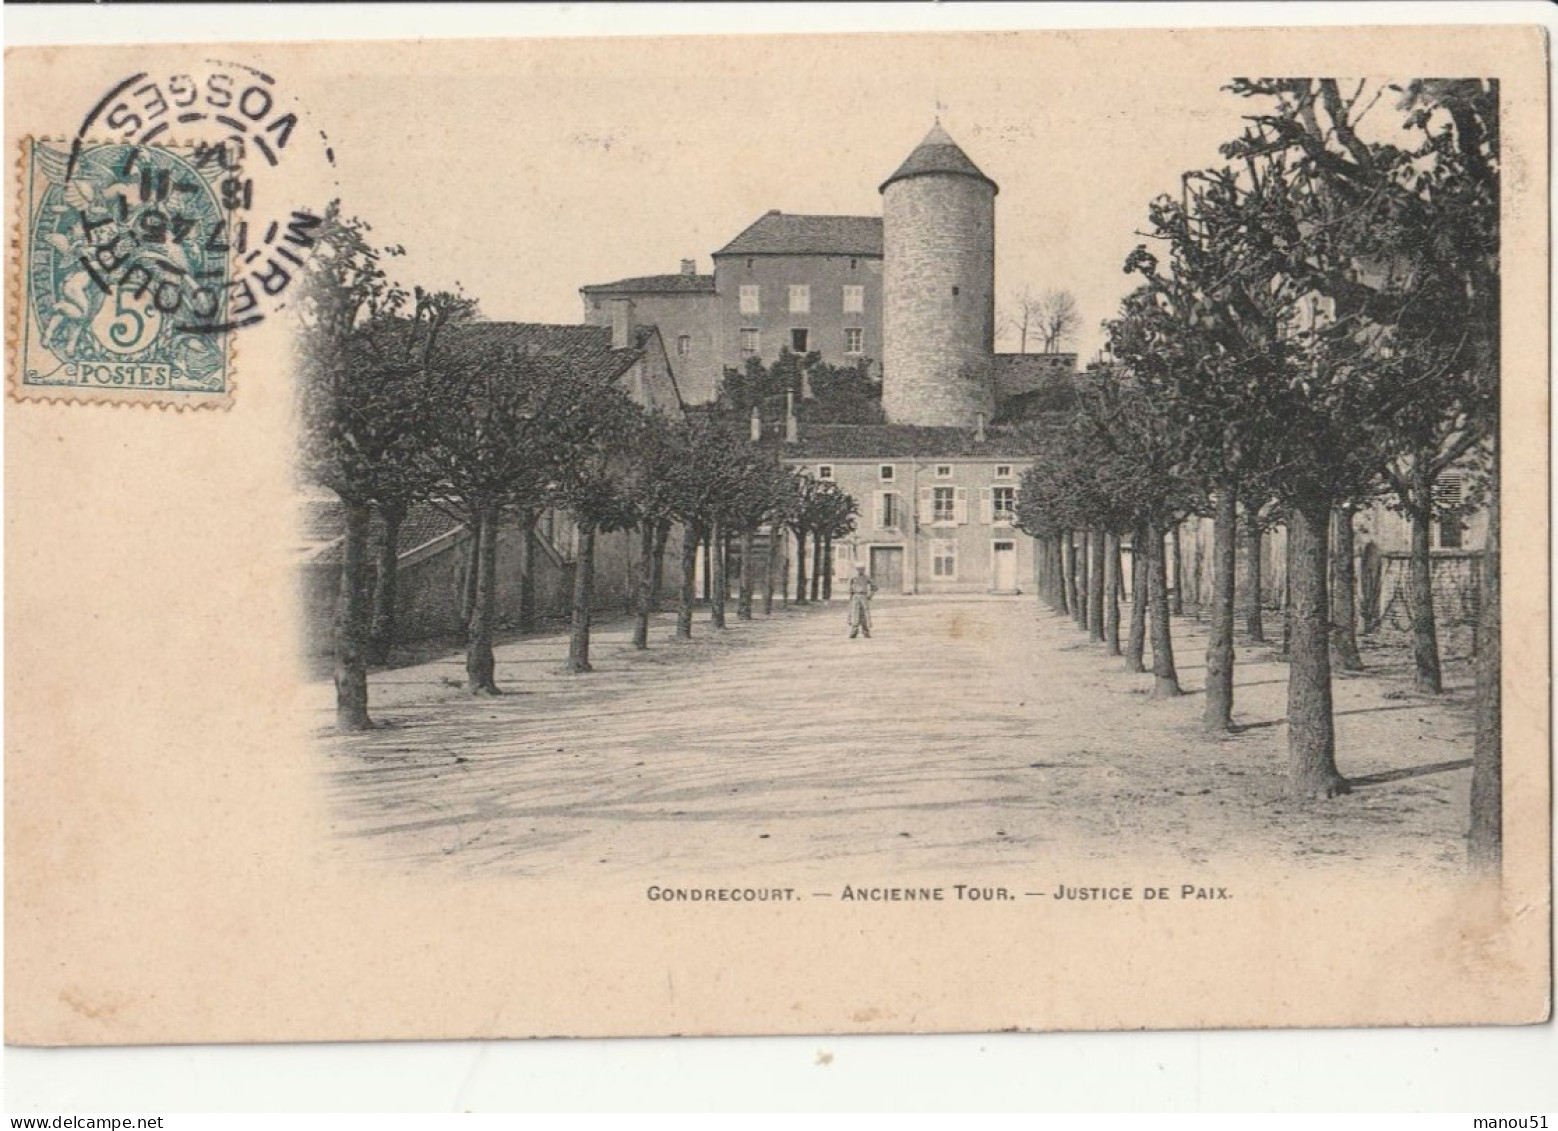 GONDRECOURT  Ancienne Tour - Justice De Paix - Gondrecourt Le Chateau